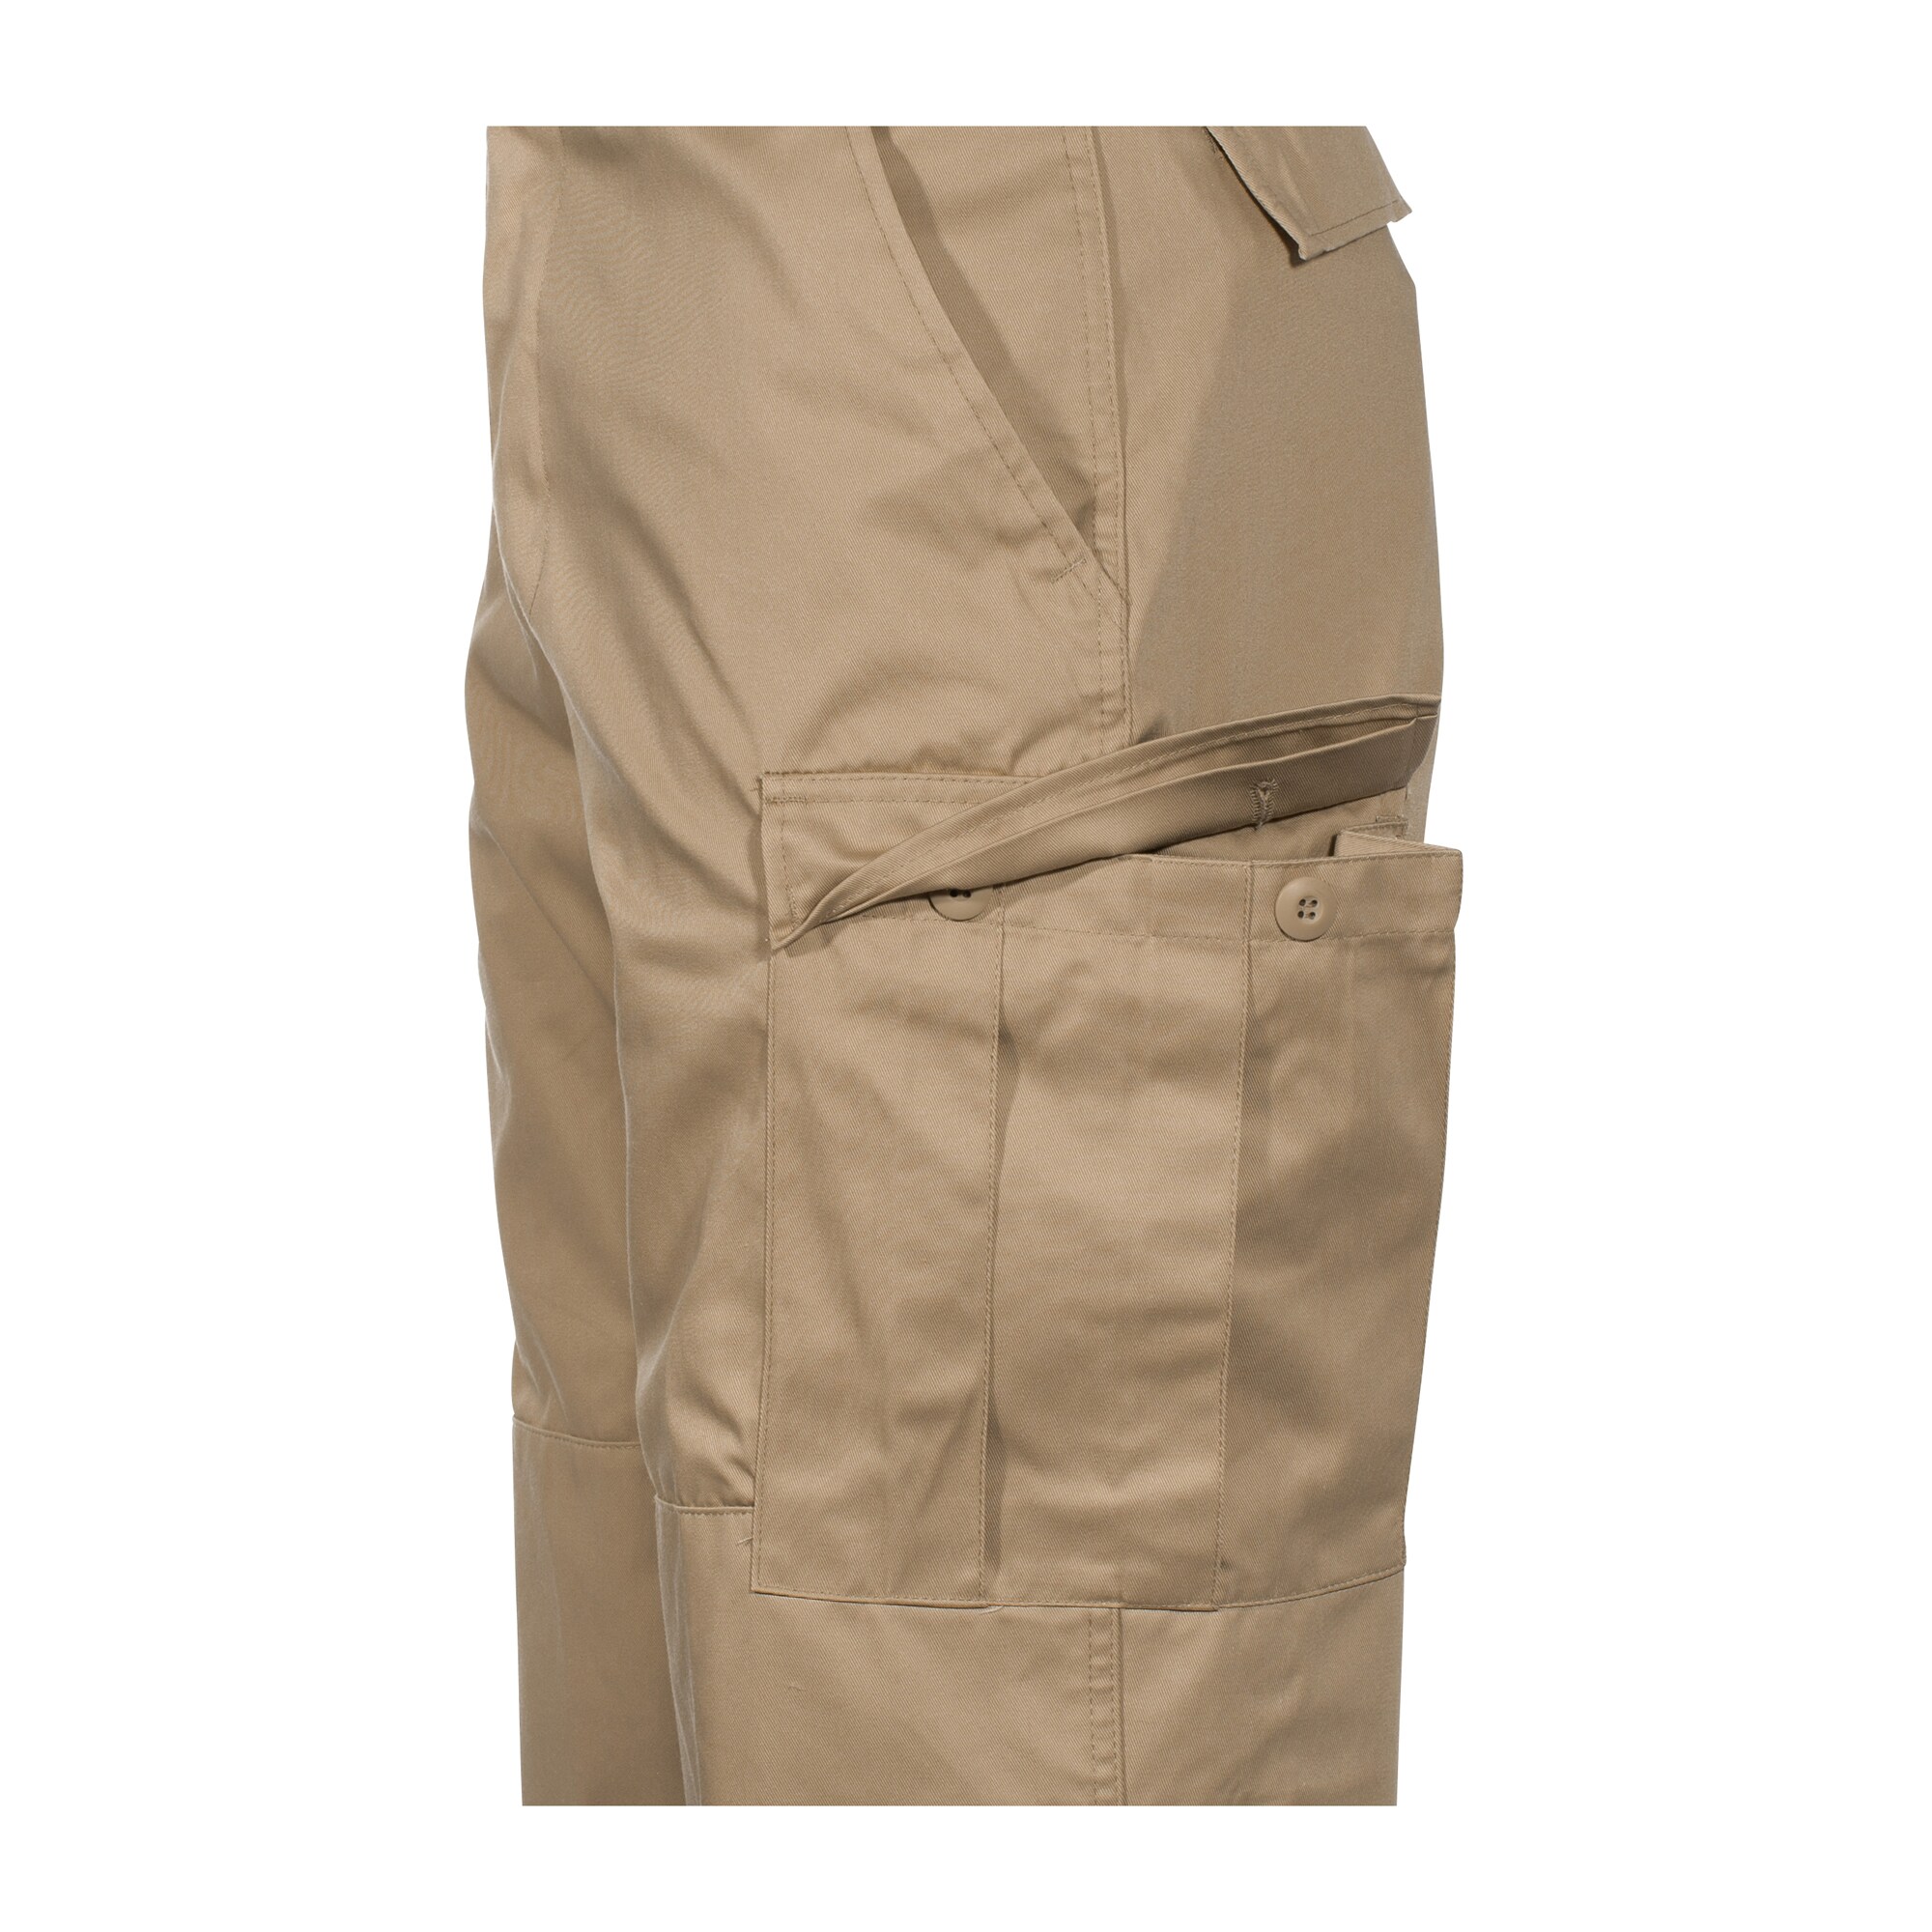 Purchase the Mil-Tec BDU Style Pants khaki by ASMC